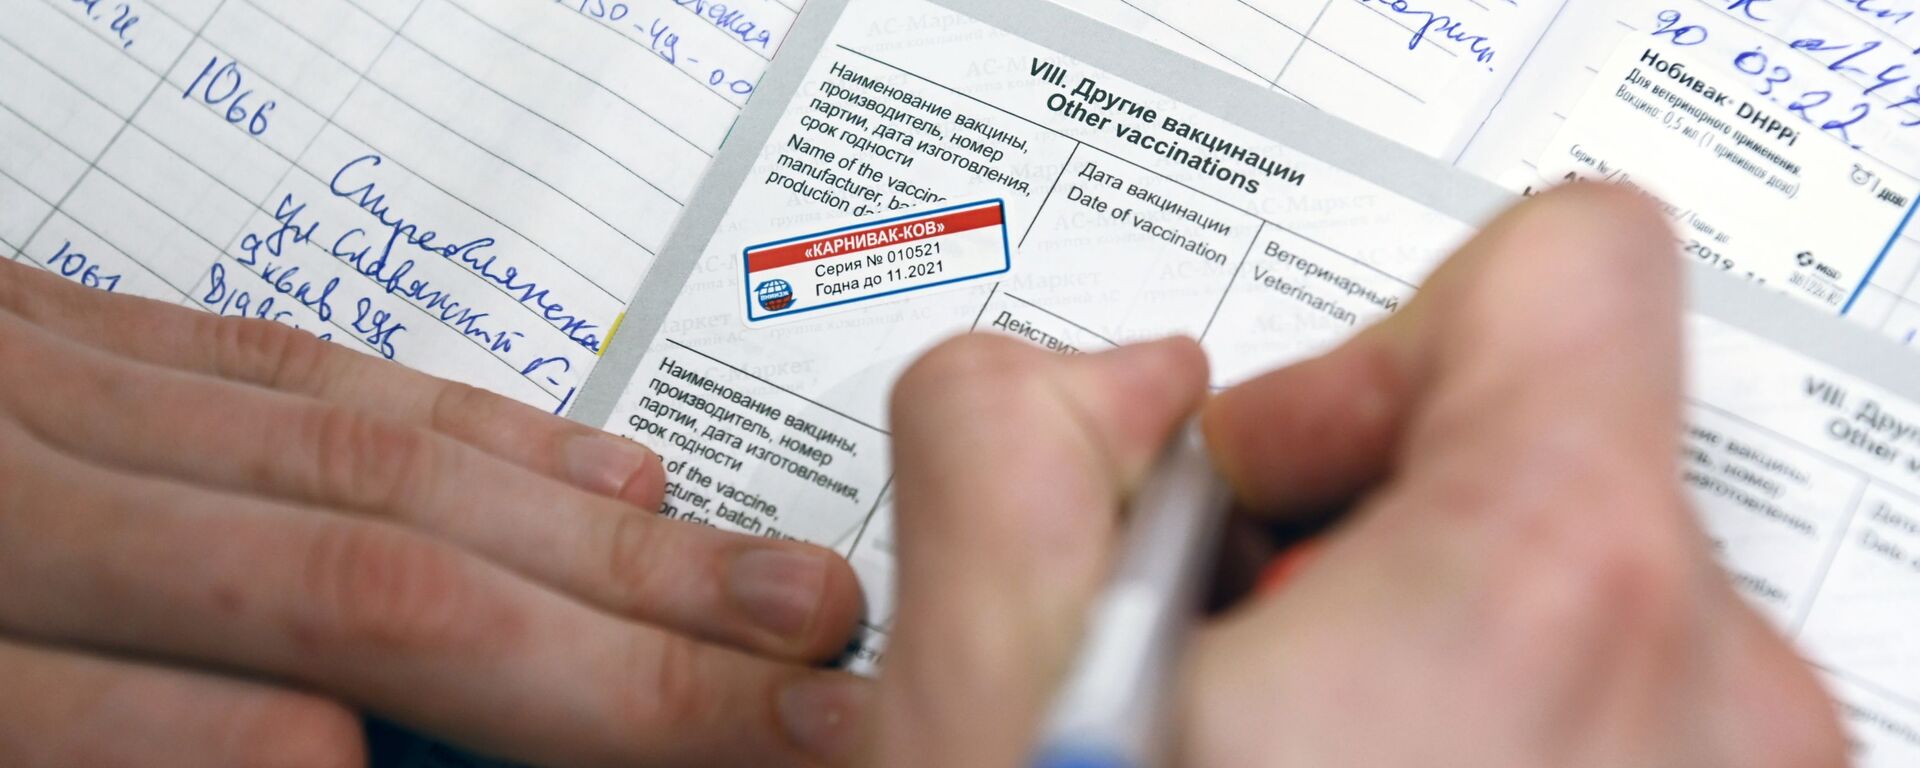 Ветеринарный врач делает отметку в паспорте животного после вакцинации от COVID-19 в ветеринарной клинике в Москве - Sputnik Արմենիա, 1920, 09.07.2021